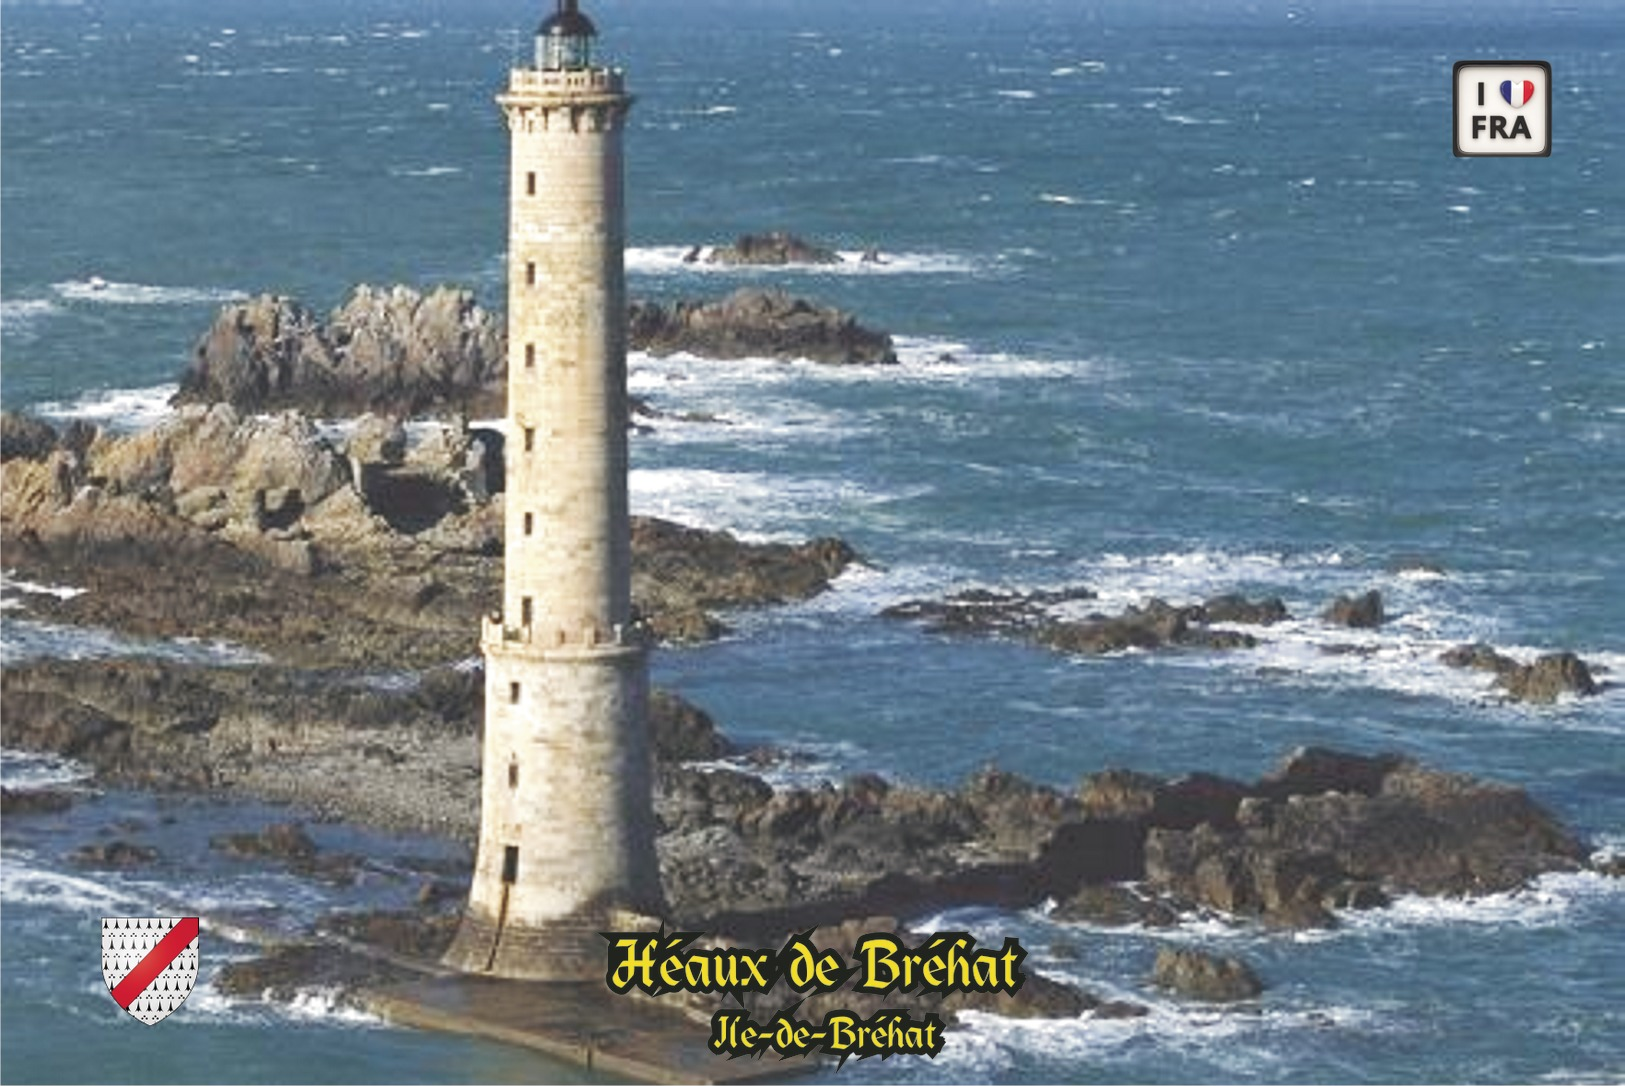 Set 6 Cartes Postales, Phares, Lighthouses Of Europe, France, Ile-de-Bréhat. Héaux De Bréhat - Phares